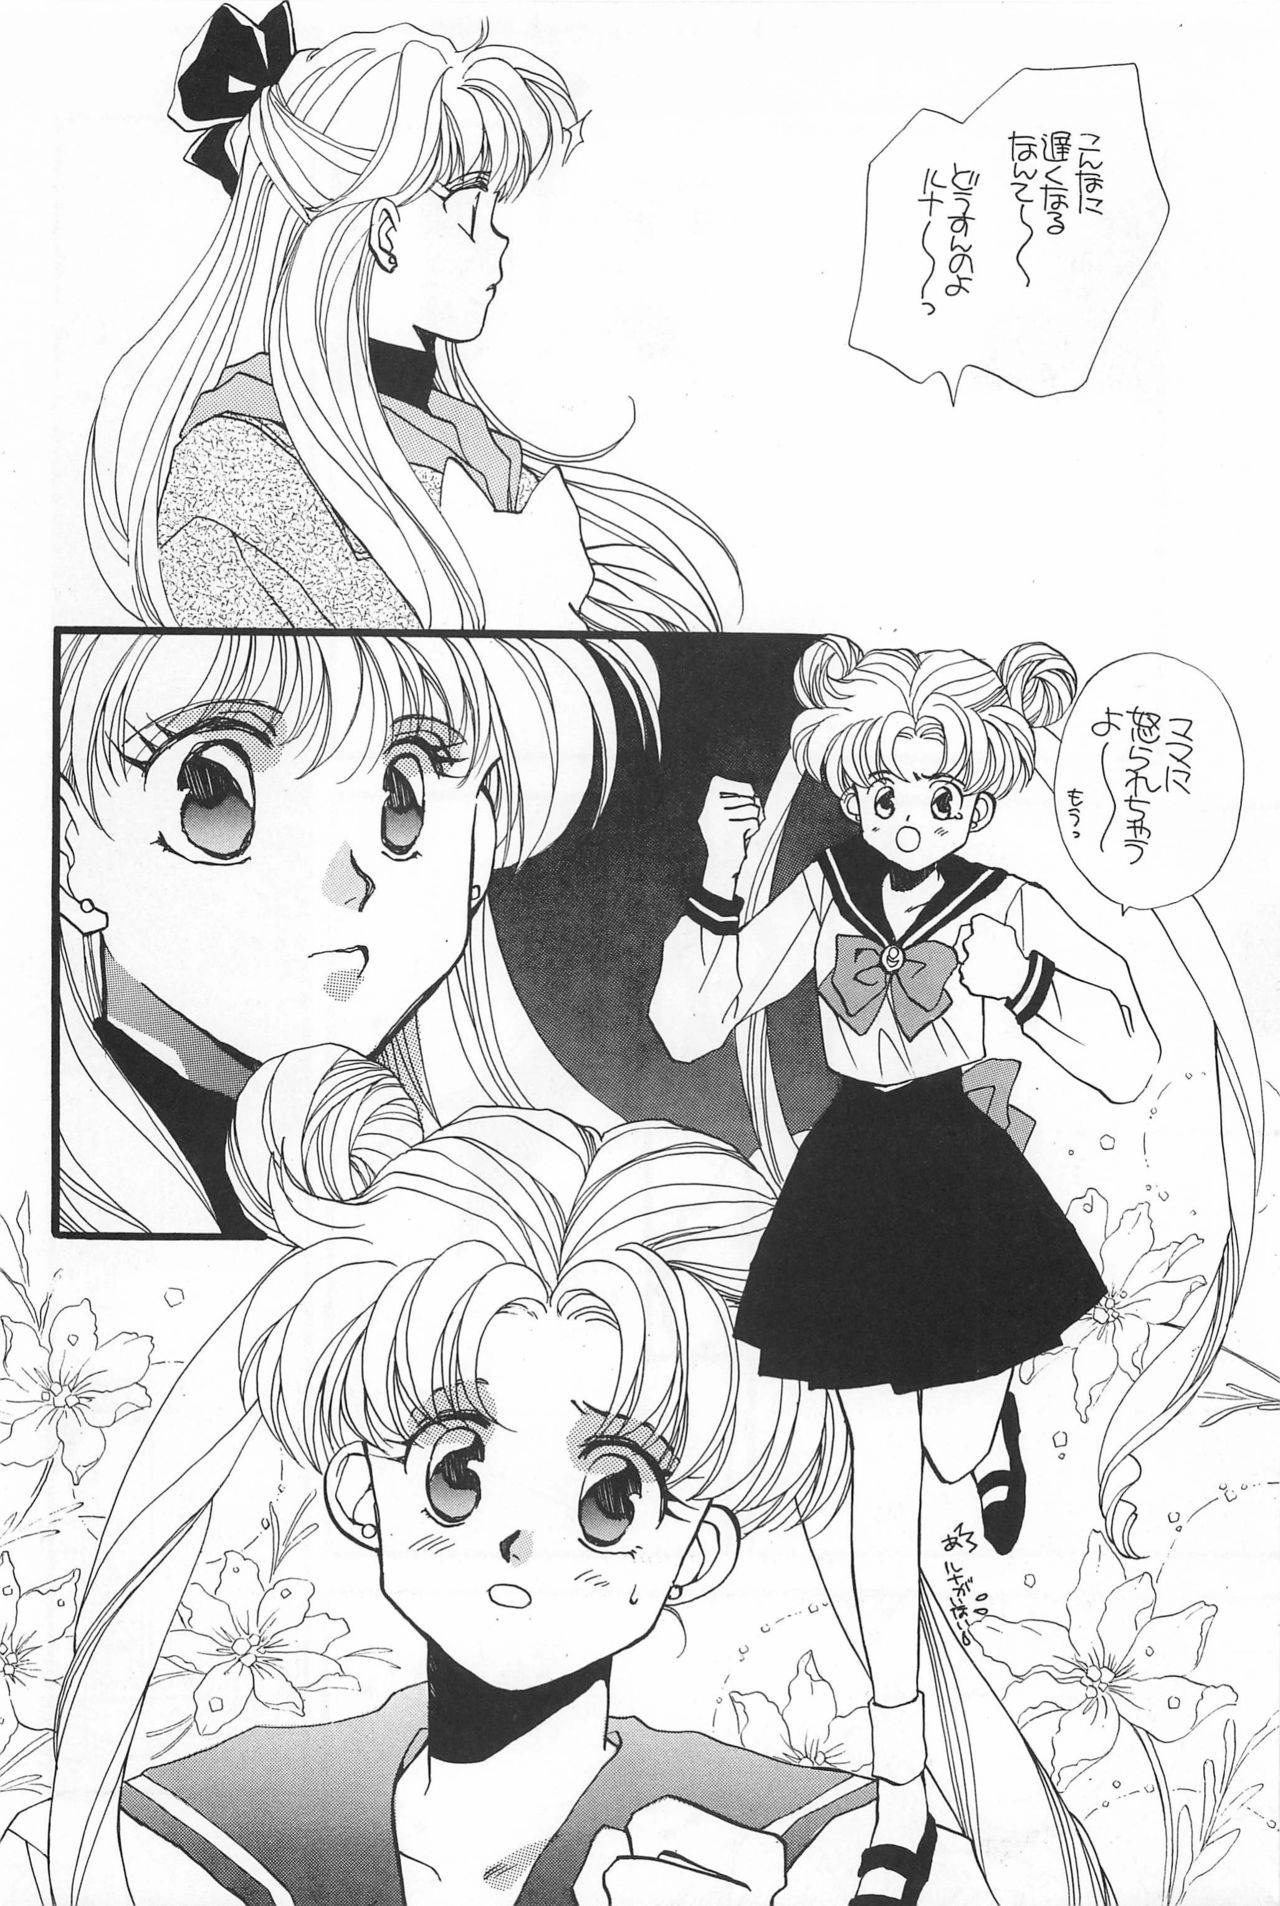 [Hello World (Muttri Moony)] Kaze no You ni Yume no You ni - Sailor Moon Collection (Sailor Moon) 85